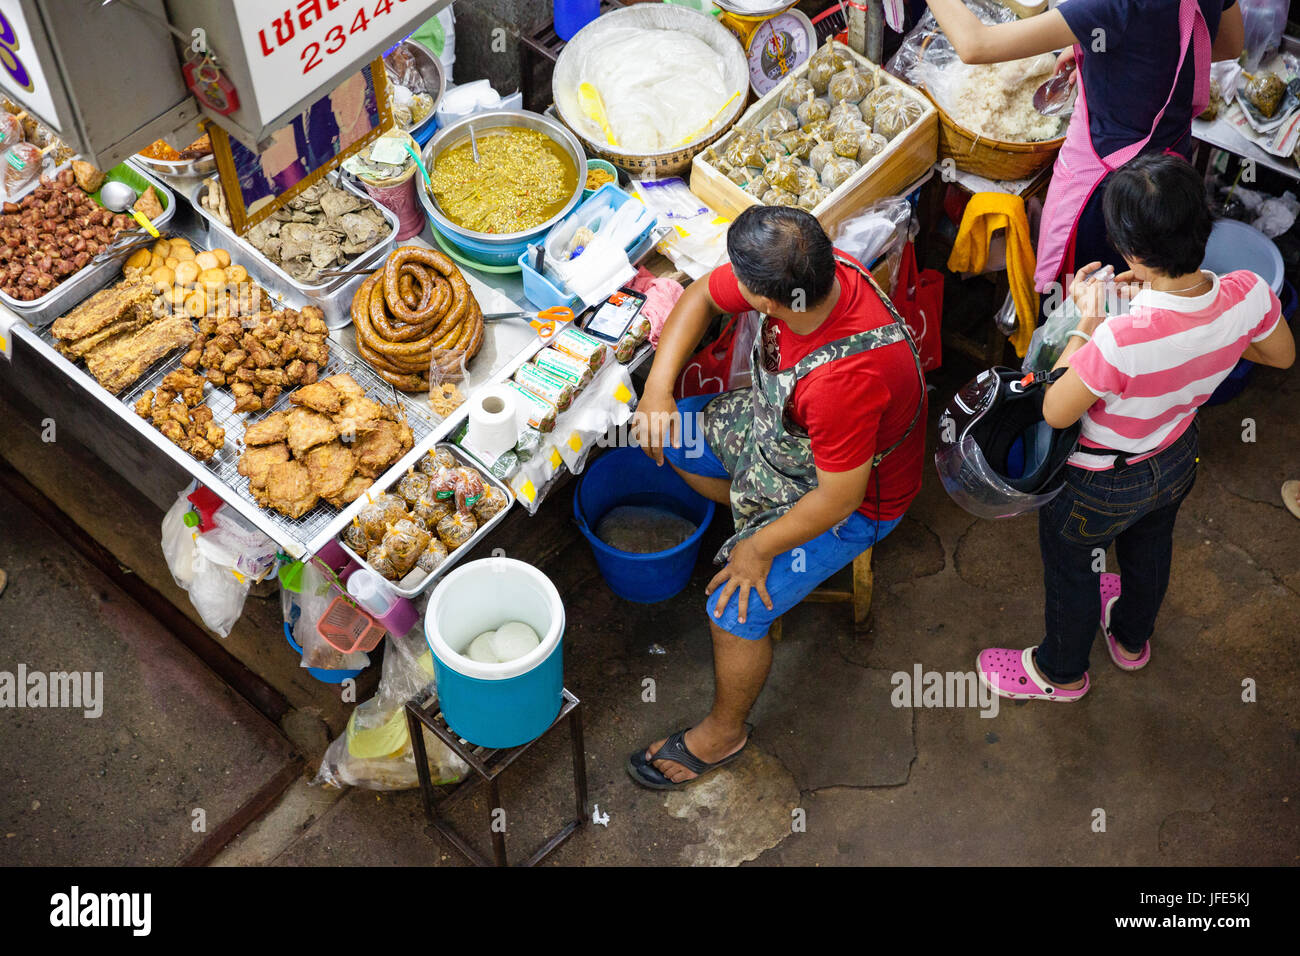 CHIANG MAI, Thailandia - 24 agosto: Uomo vende cibo al mercato il 24 agosto 2016 a Chiang Mai, Thailandia. Foto Stock